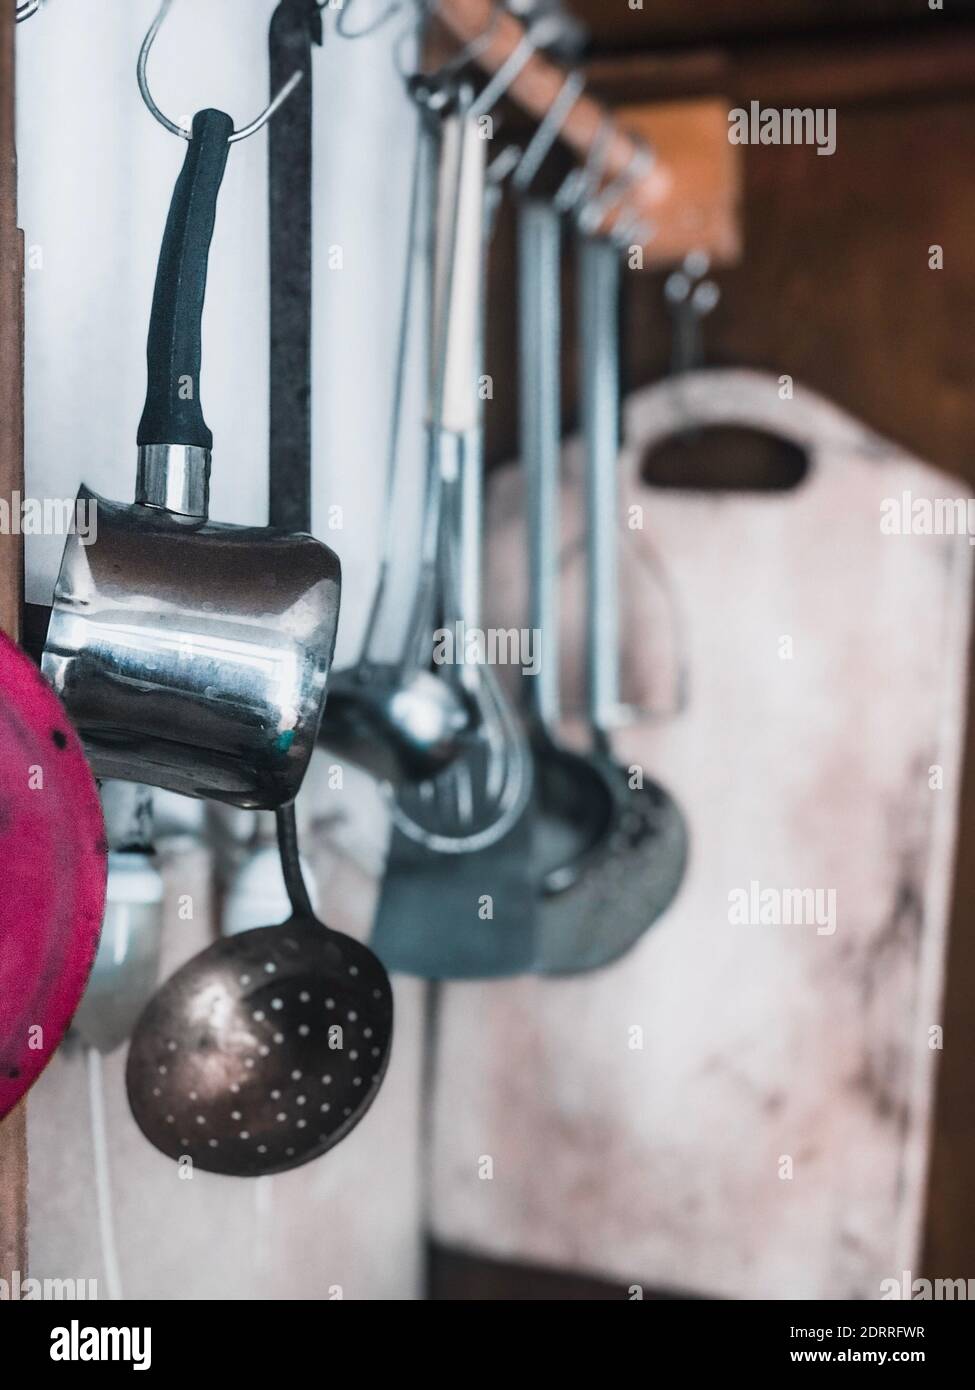 Verschiedene Utensilien Aufhängen An Haken In Der Küche Stockfotografie -  Alamy